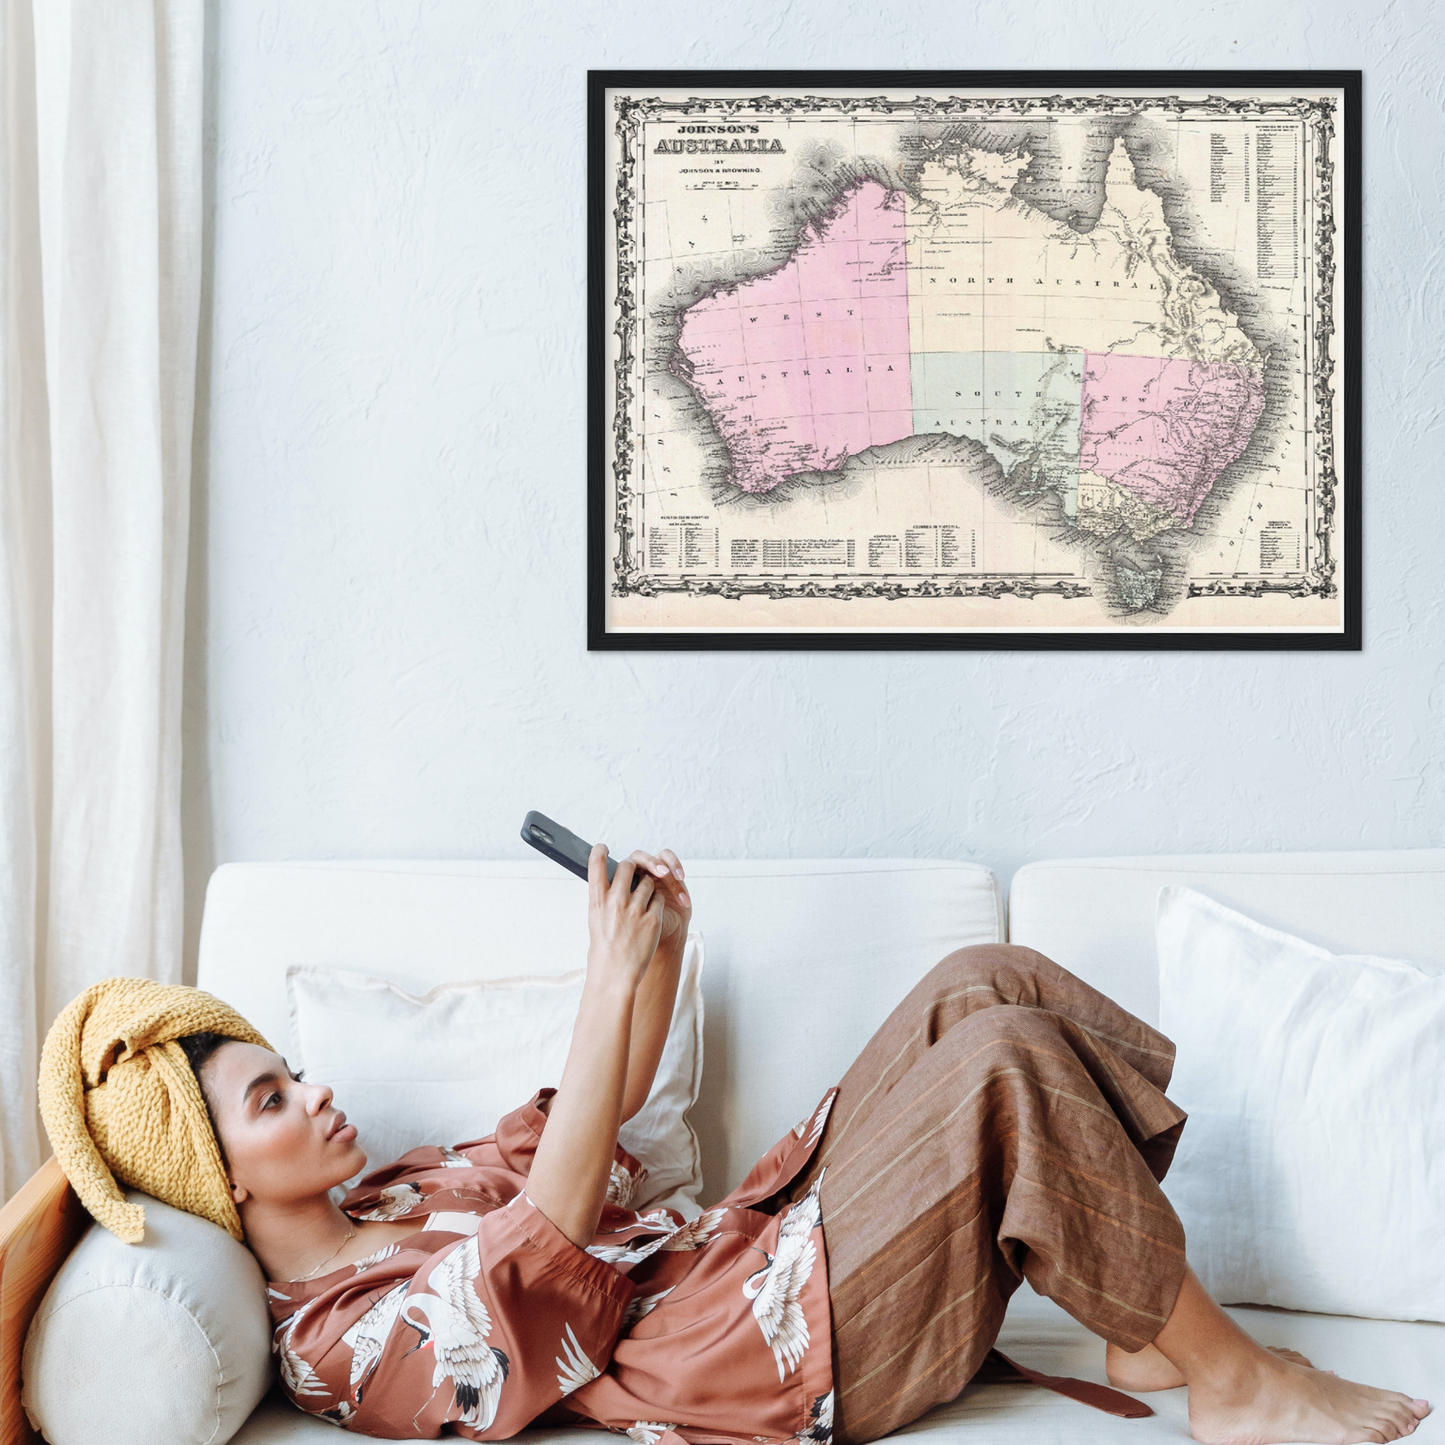 Historische Landkarte Australien um 1861